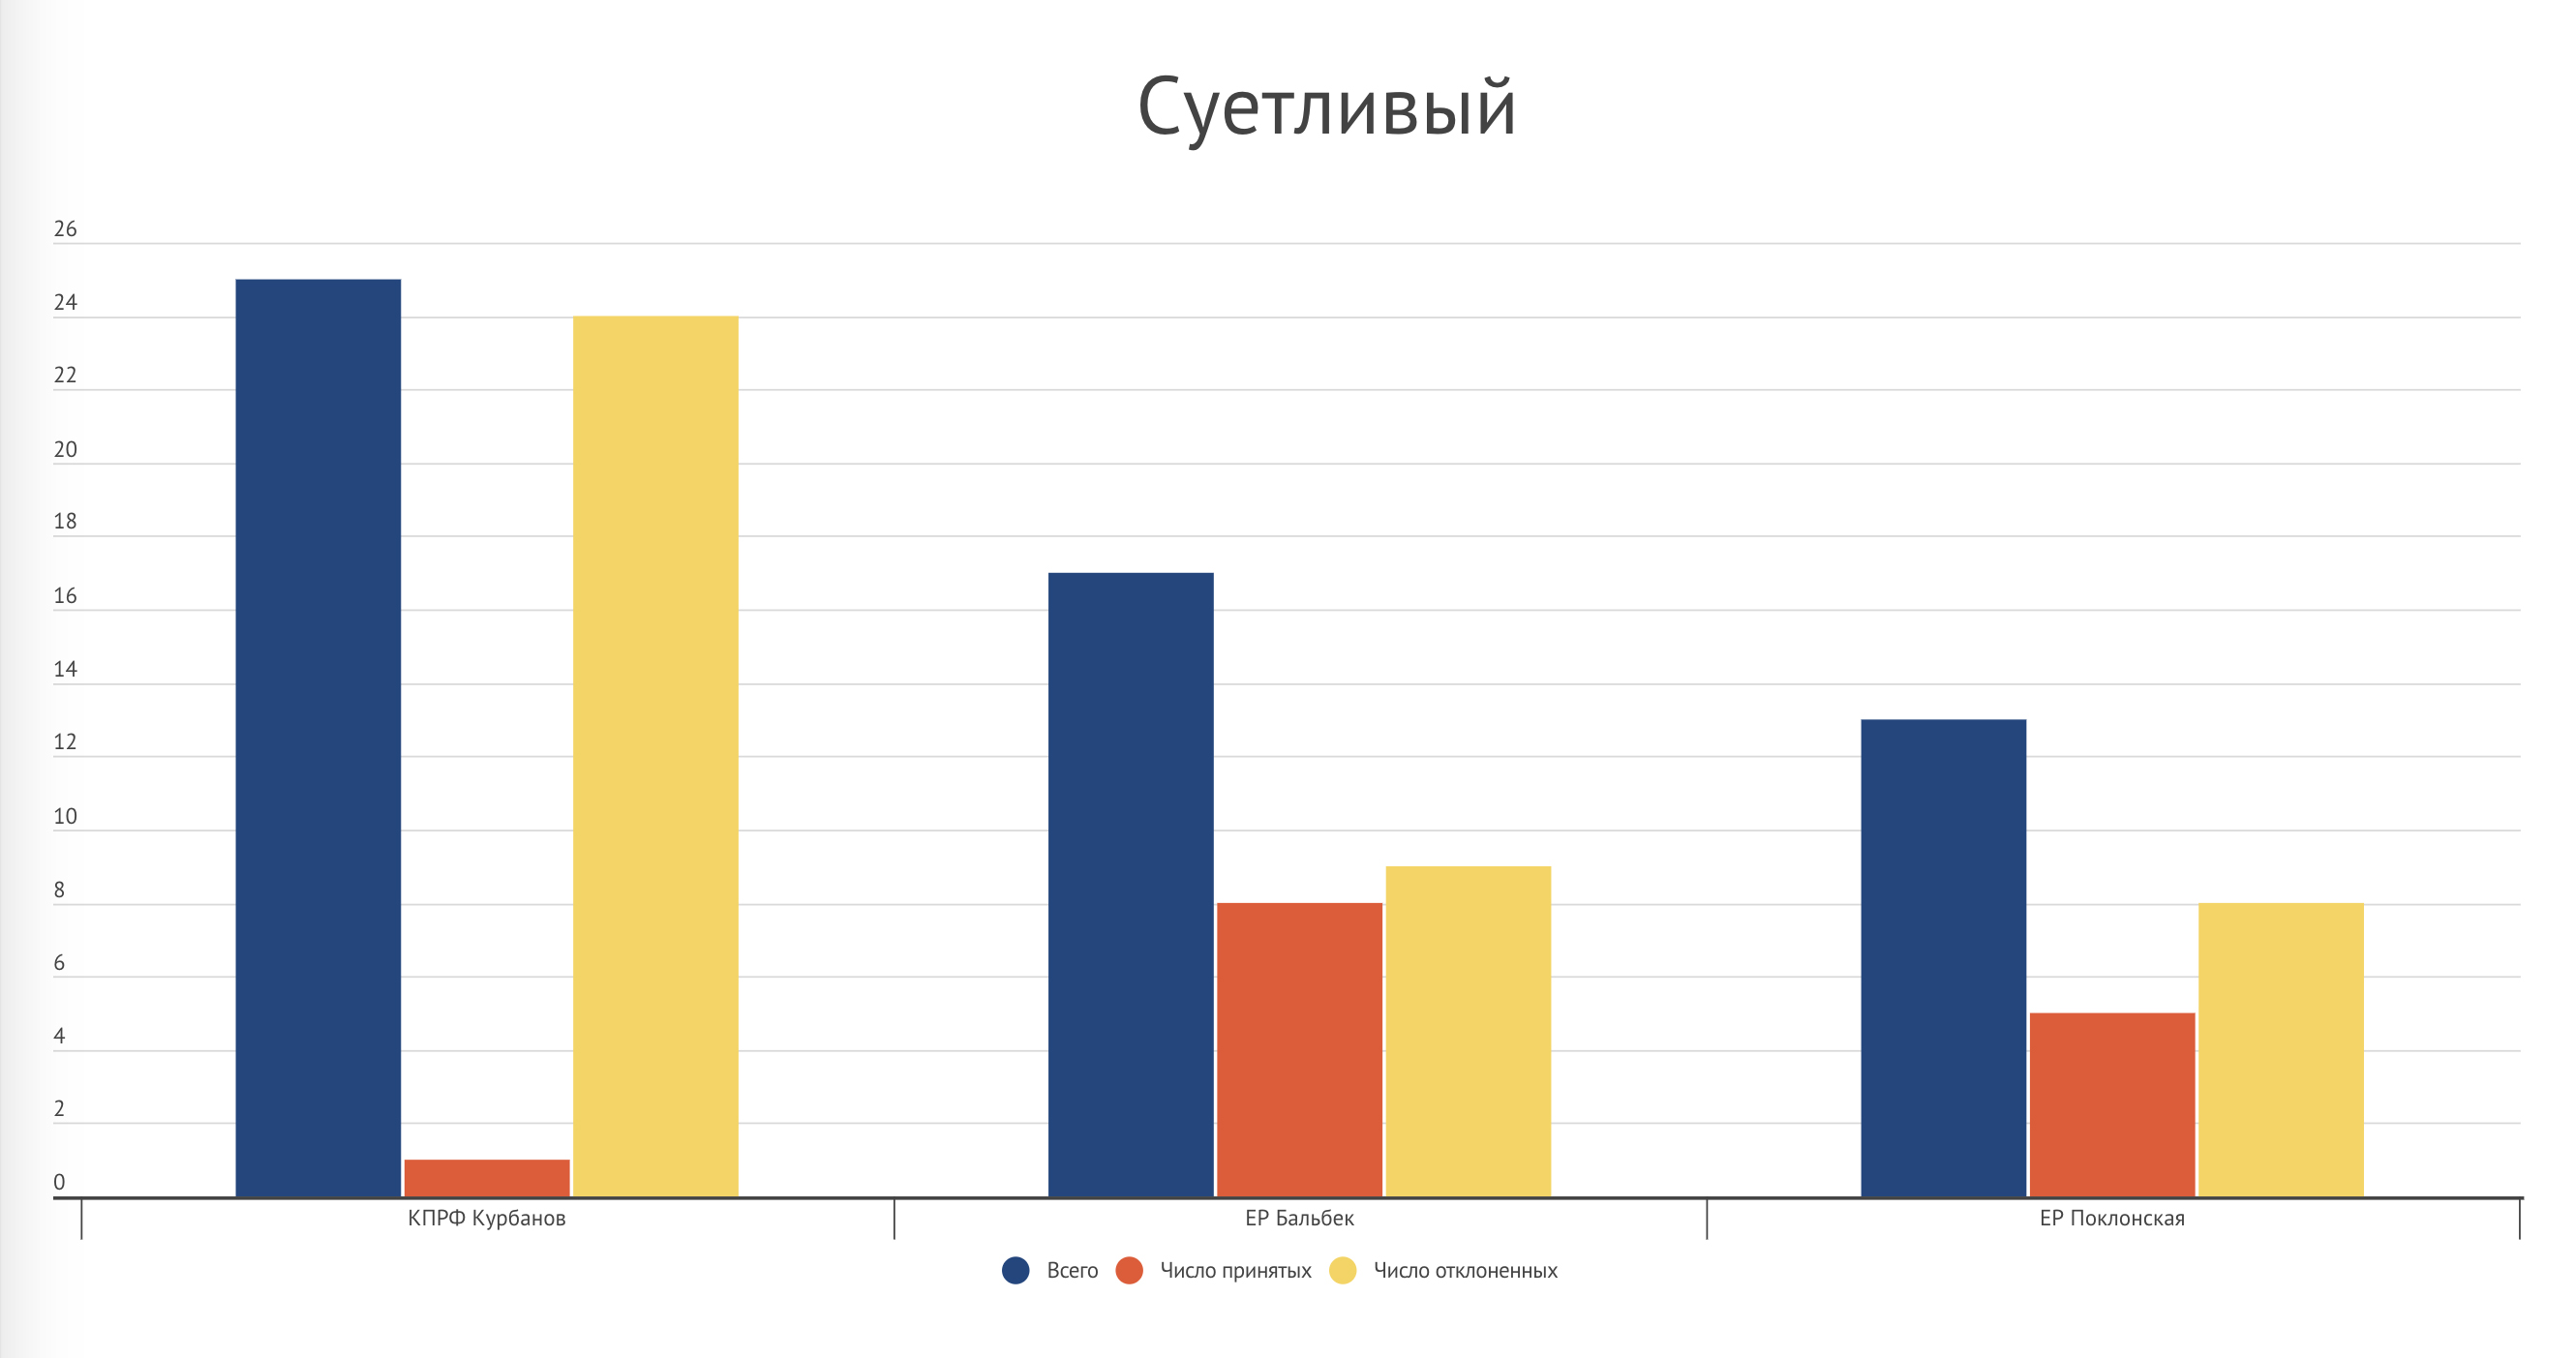 Республика Крым – график 3